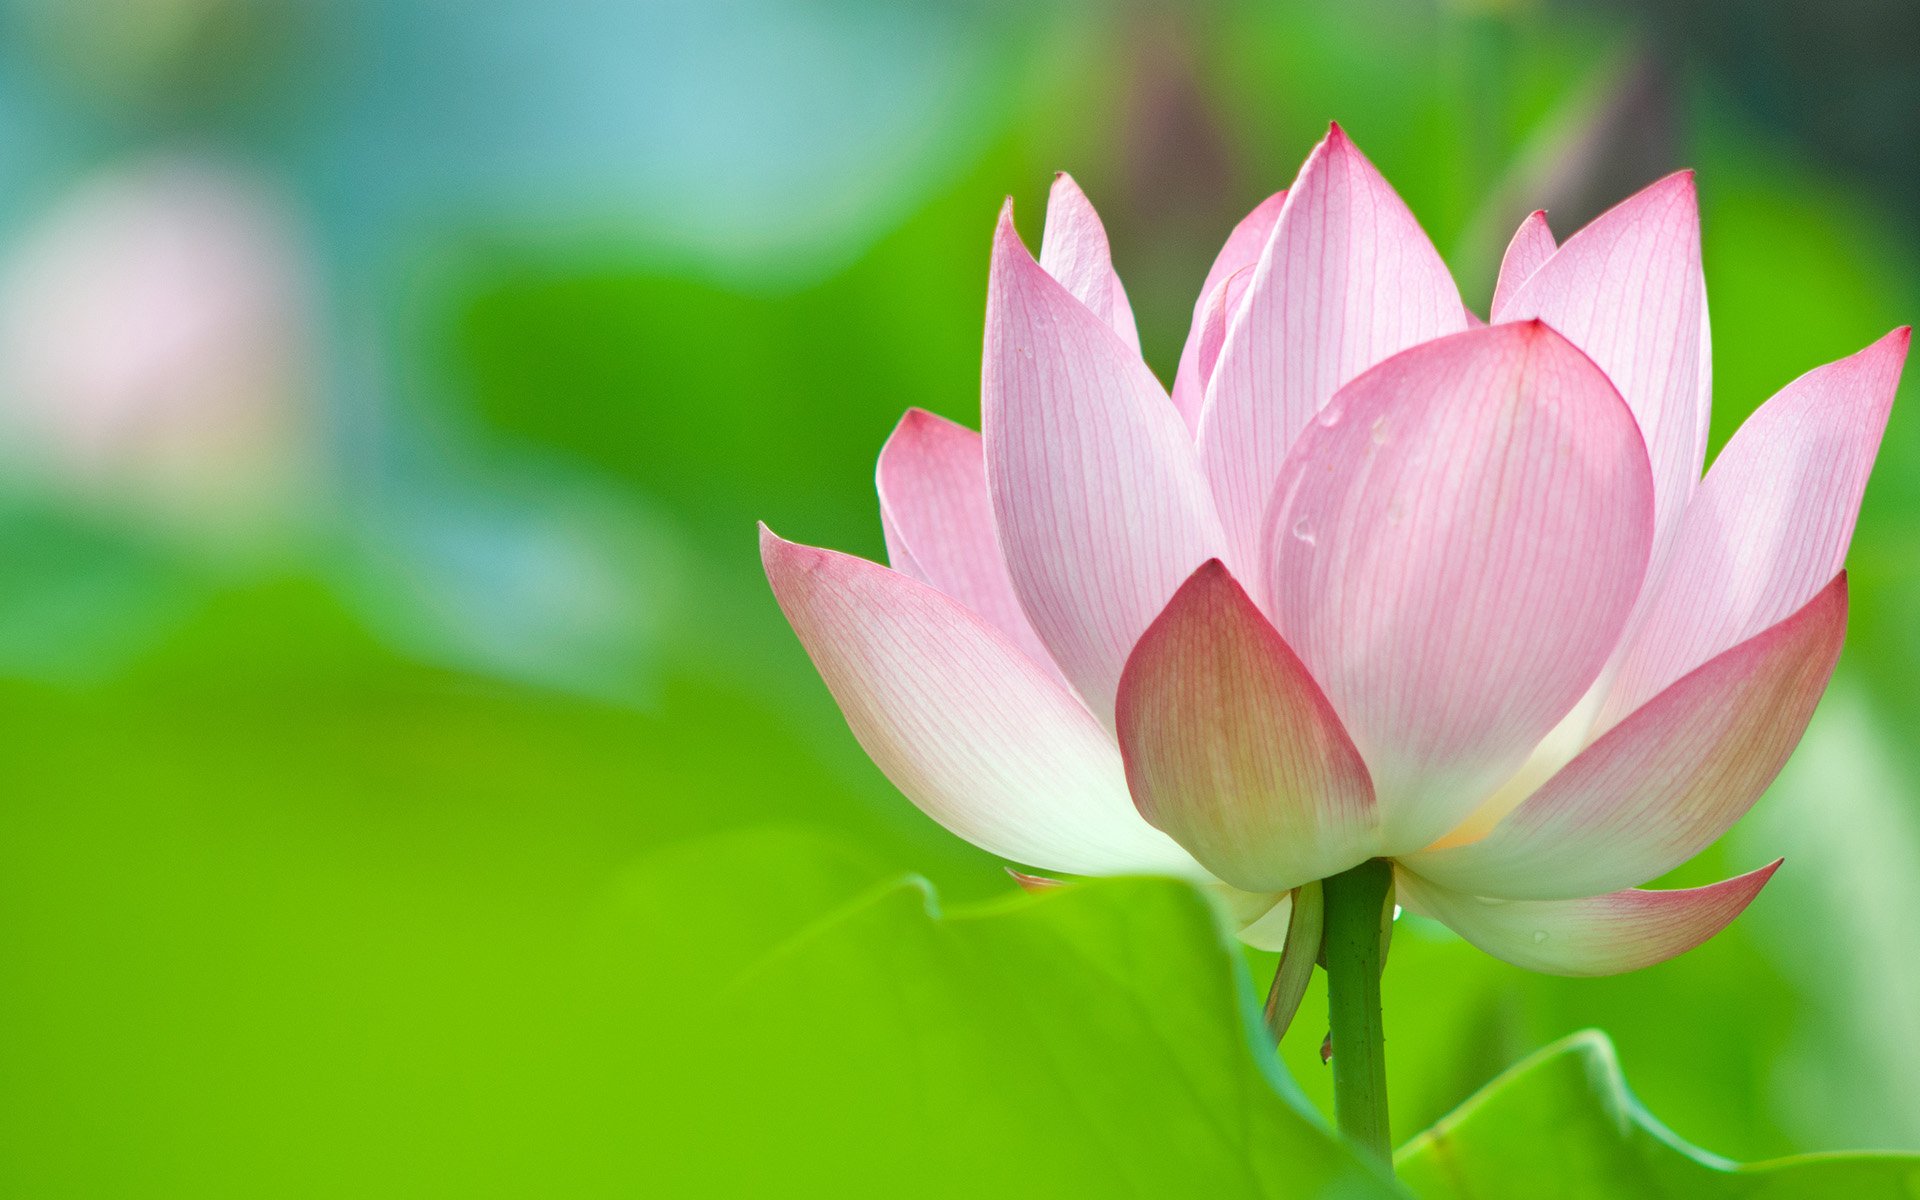 Hoa sen là biểu tượng của sự thanh tịnh và hoàn thiện trong nền văn hoá Việt Nam. Bức ảnh về hoa sen sẽ đưa bạn đến với thế giới tuyệt đẹp của thiên nhiên và nghệ thuật, nơi mà hoa sen trở thành nguồn cảm hứng cho những tác phẩm vô cùng tuyệt vời. 